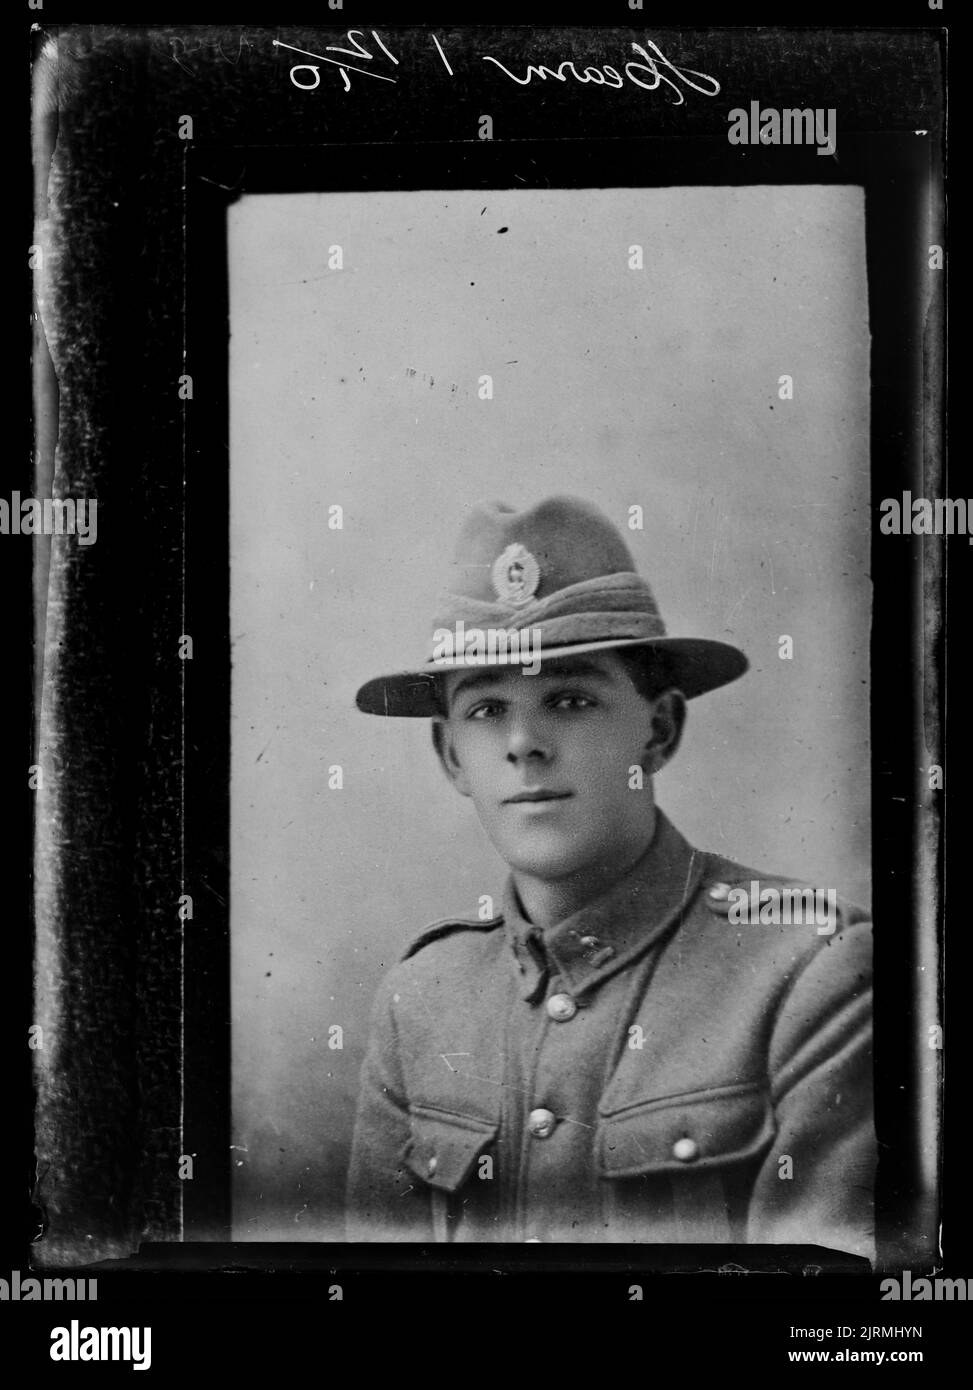 Kopie eines Portraits eines Soldaten mit der Aufschrift Hearn 1 12/10 vig Stockfoto